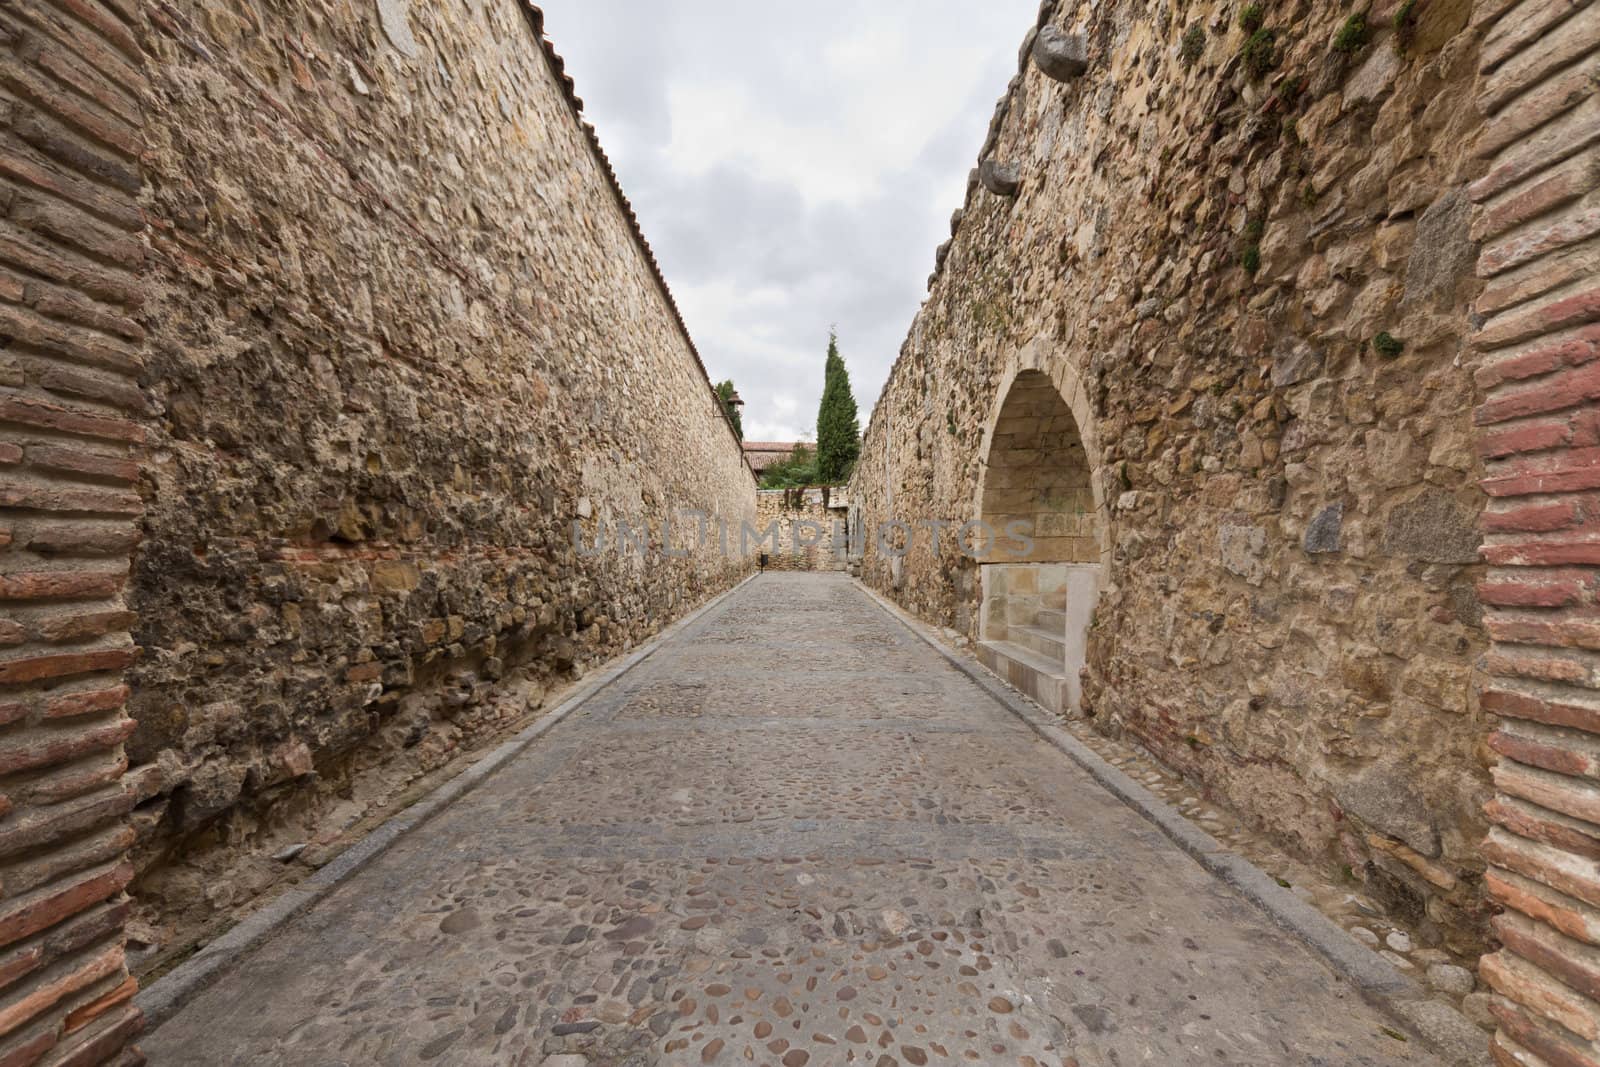 A stone corridor in the city of Segovia, Spain